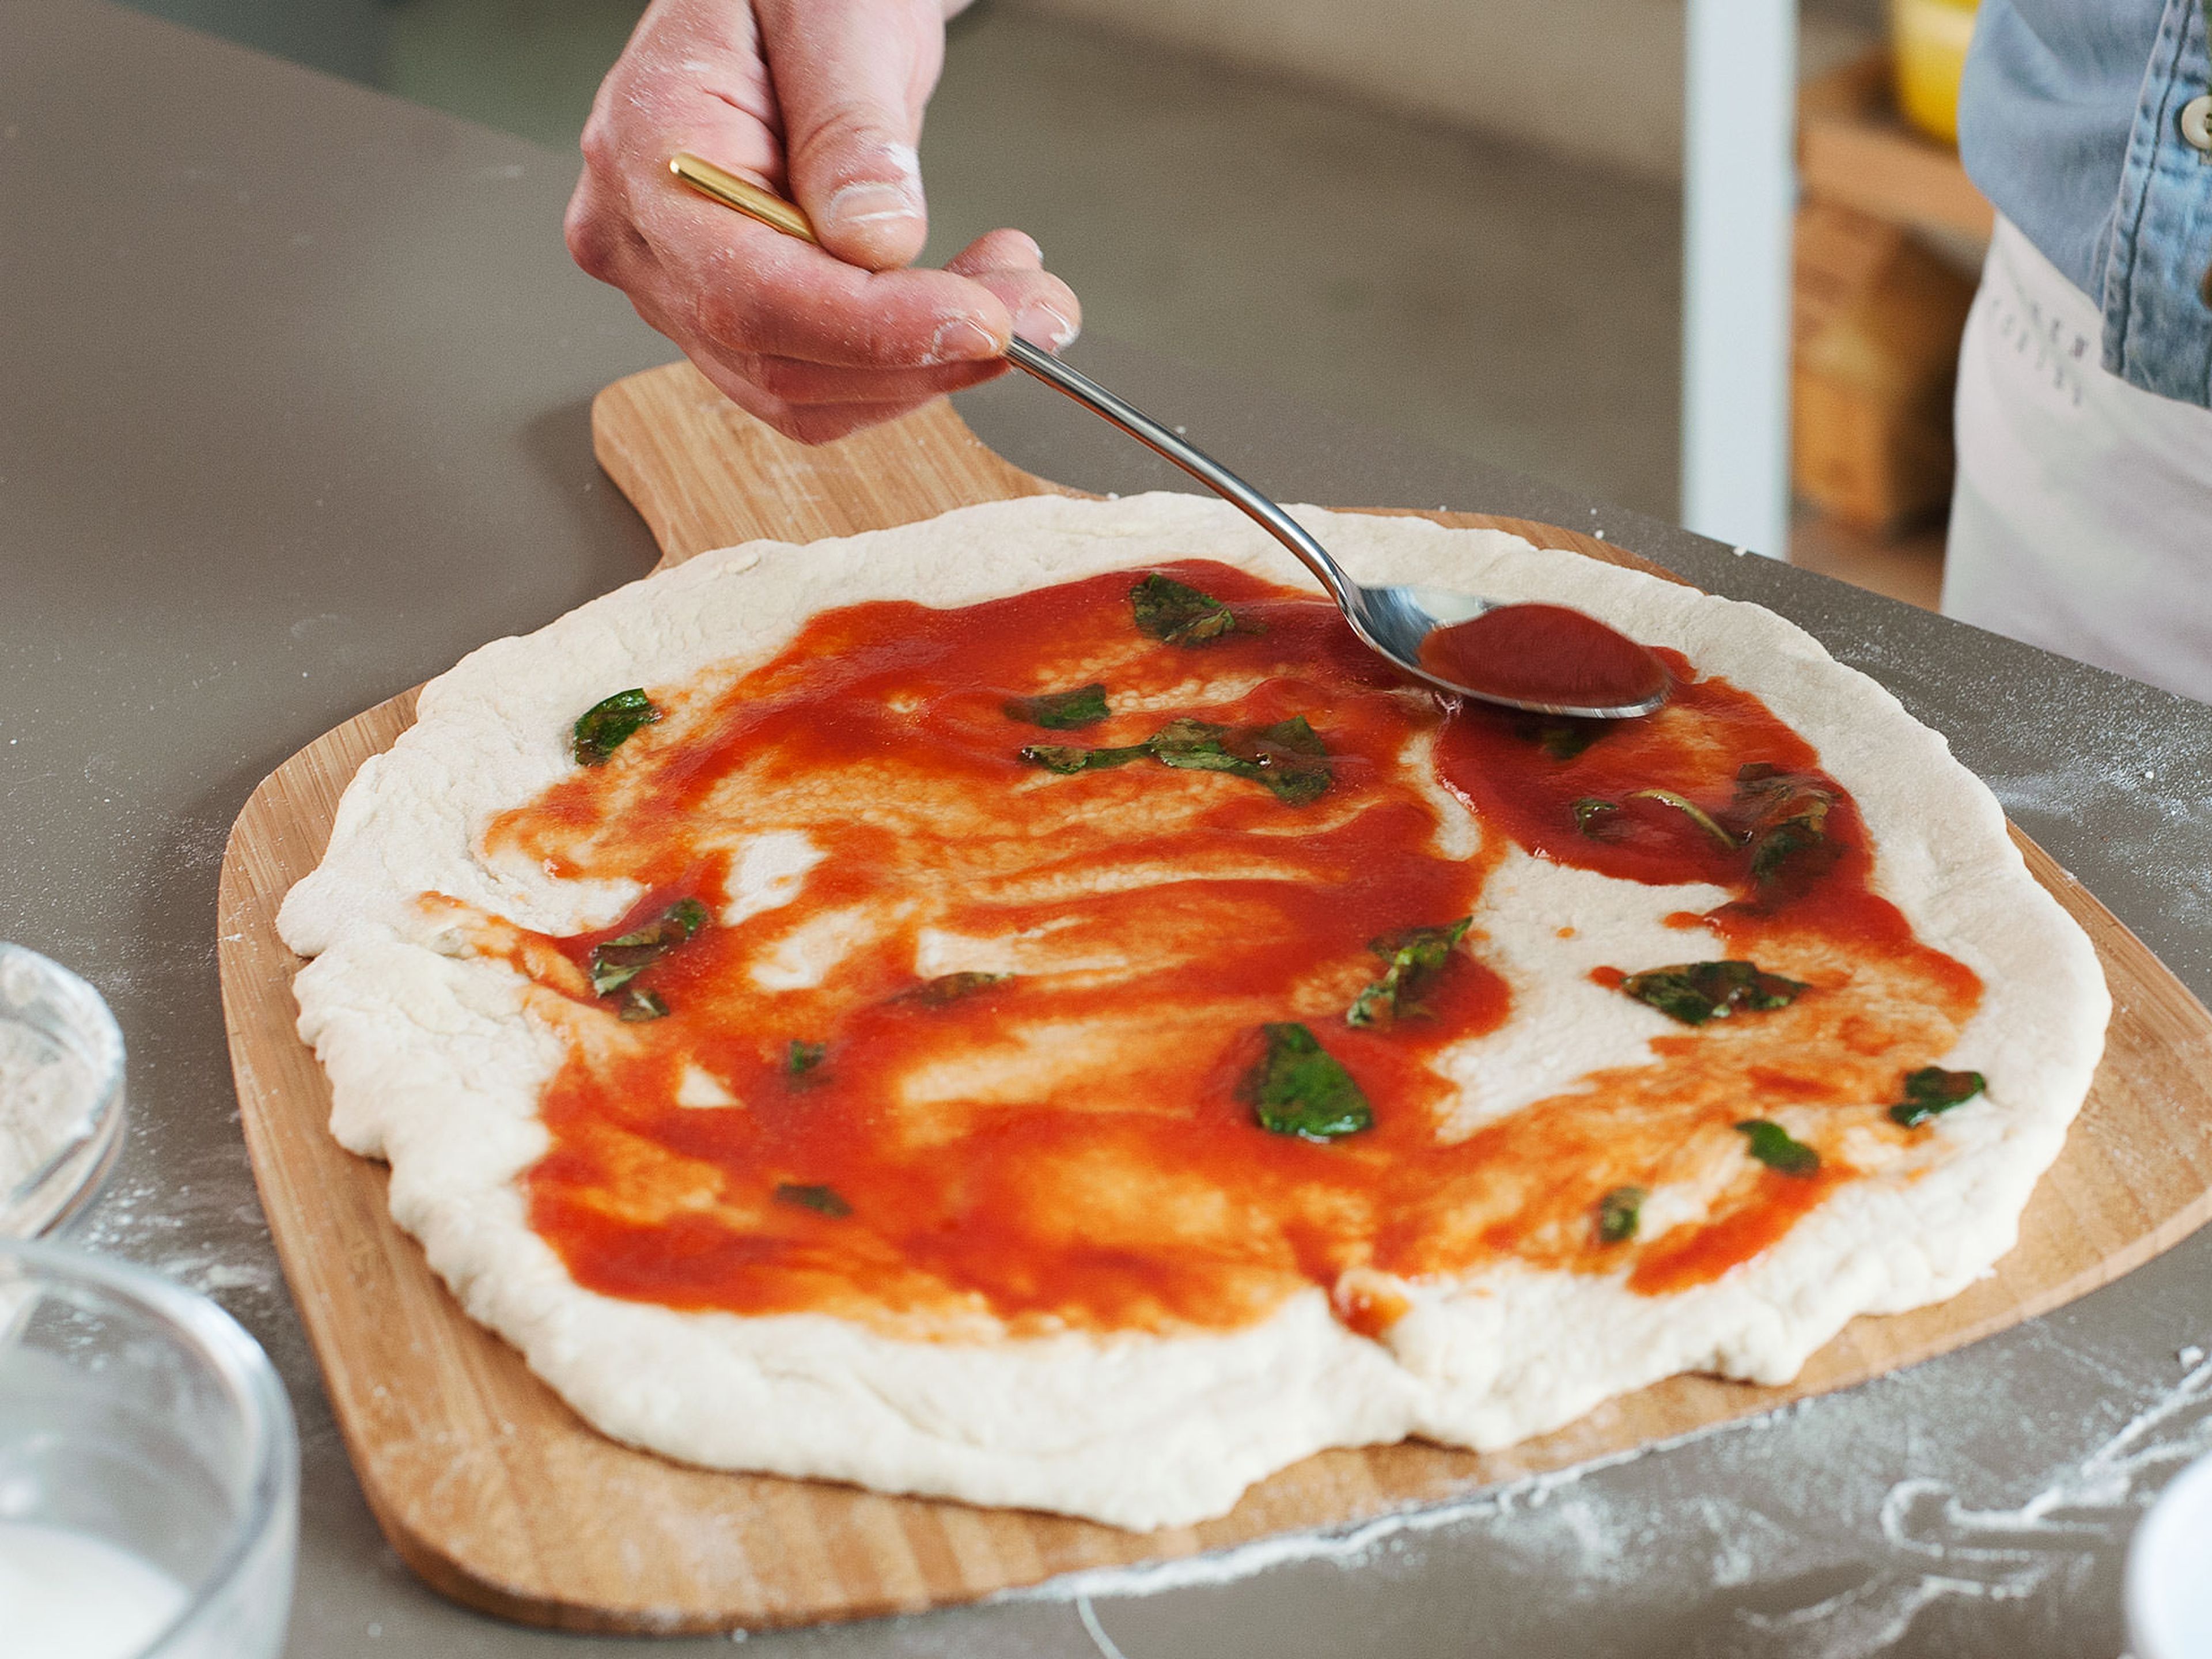 In einer kleinen Schüssel passierte Tomaten, Olivenöl und Salz mischen. Basilikumblätter grob abreißen und zur Sauce hinzugeben. Eine dünne Schicht der Sauce auf der Pizza verteilen und im vorgeheizten Backofen auf dem Pizzastein bei 250°C für ca. 6 - 7min. backen.